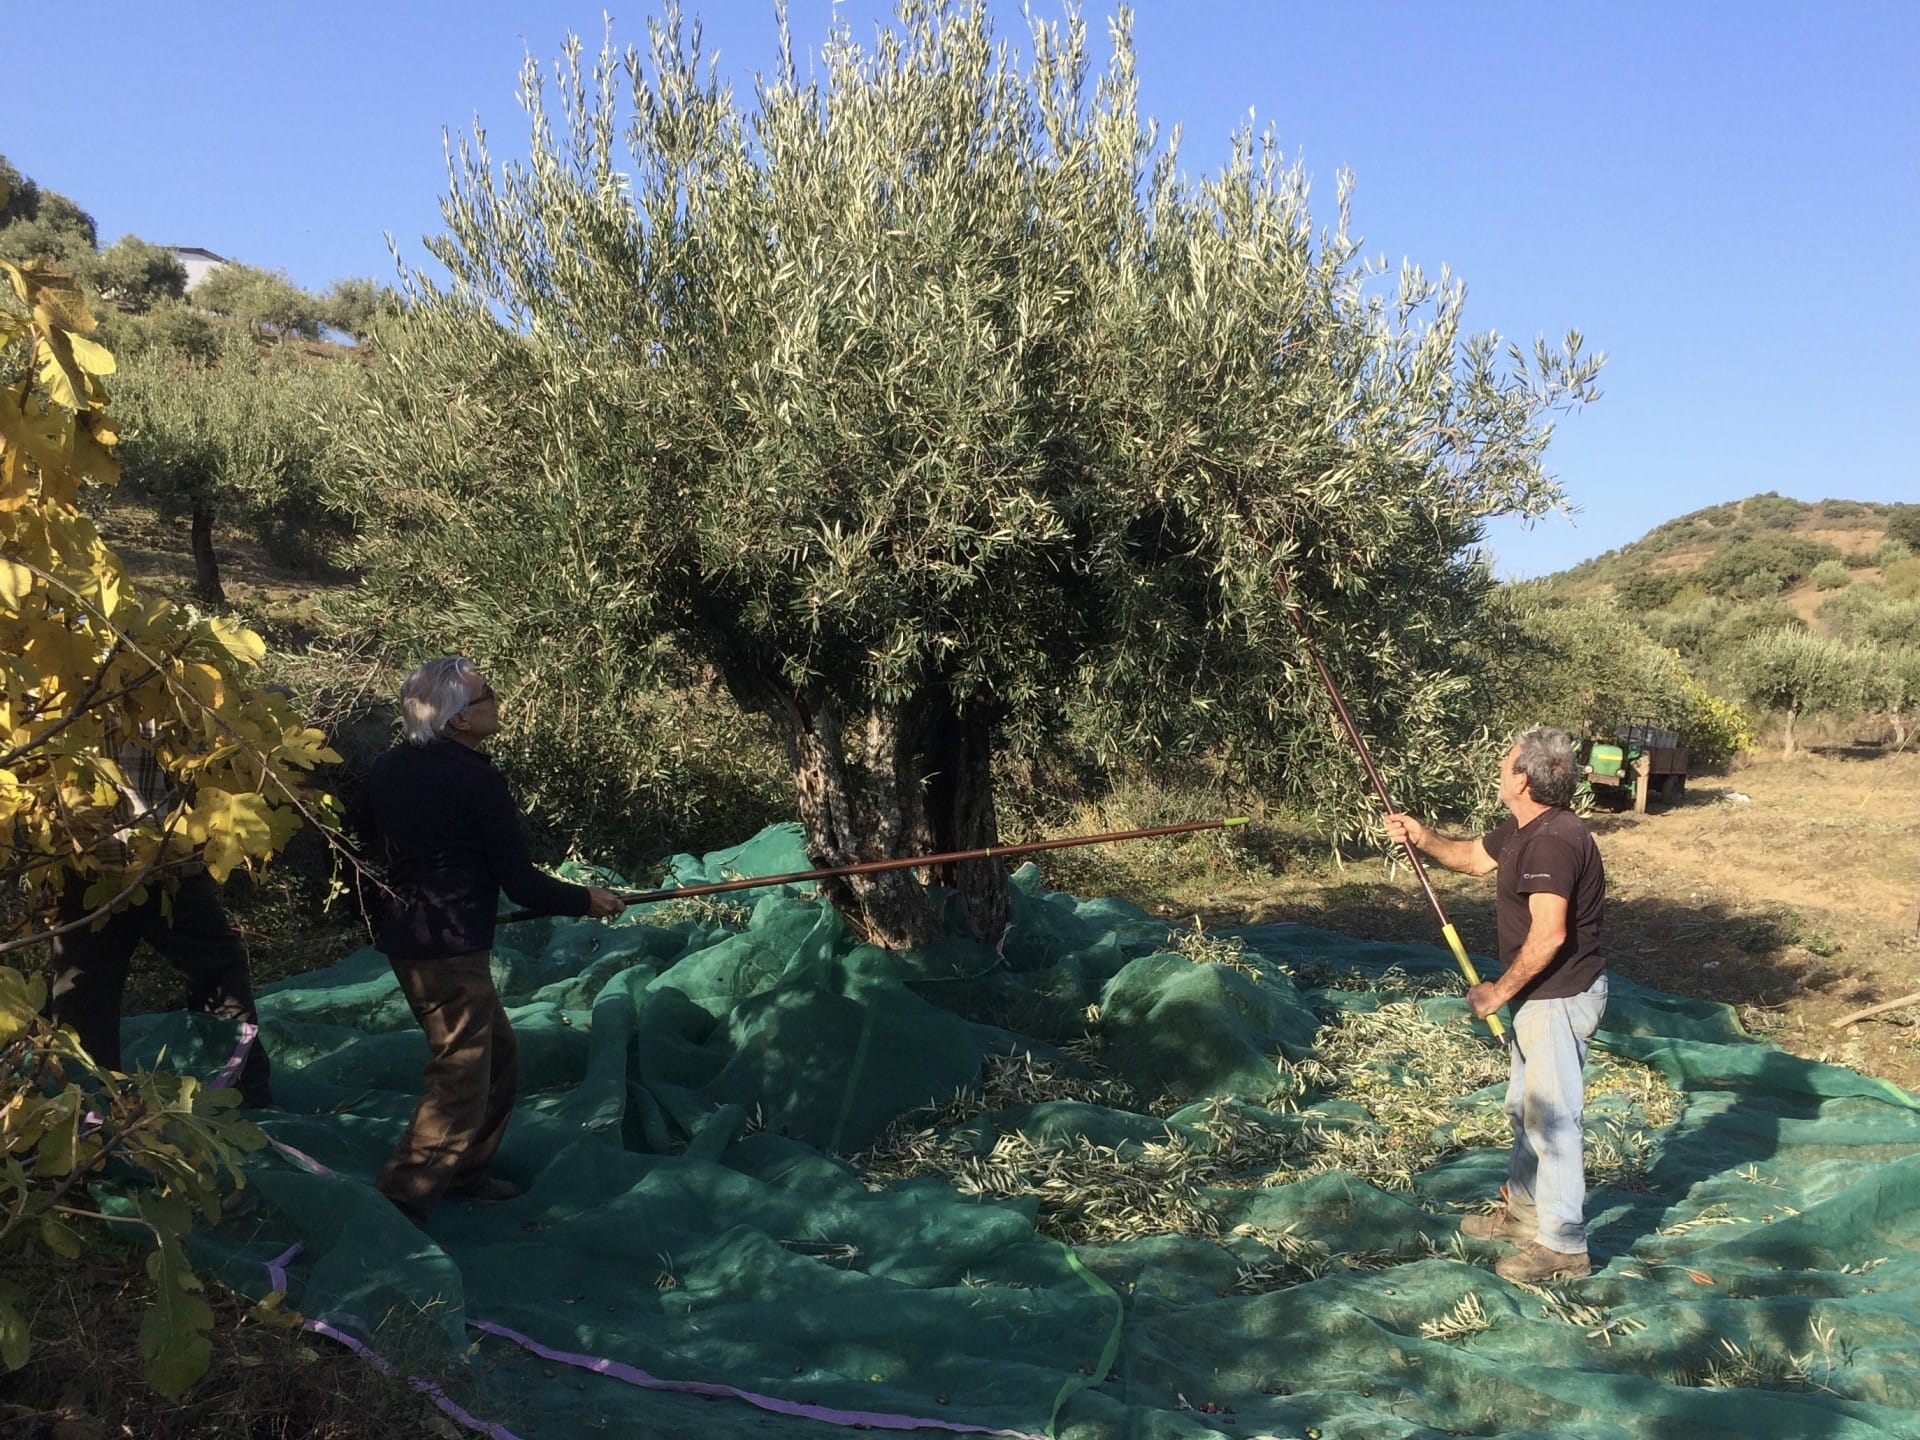 Европа-лучшие-конкурсы-оливкового масла-производство-португальские-производители-пожинают-преимущества-рекордного-урожая-на-мировой-конкуренции-оливкового-масла-раз